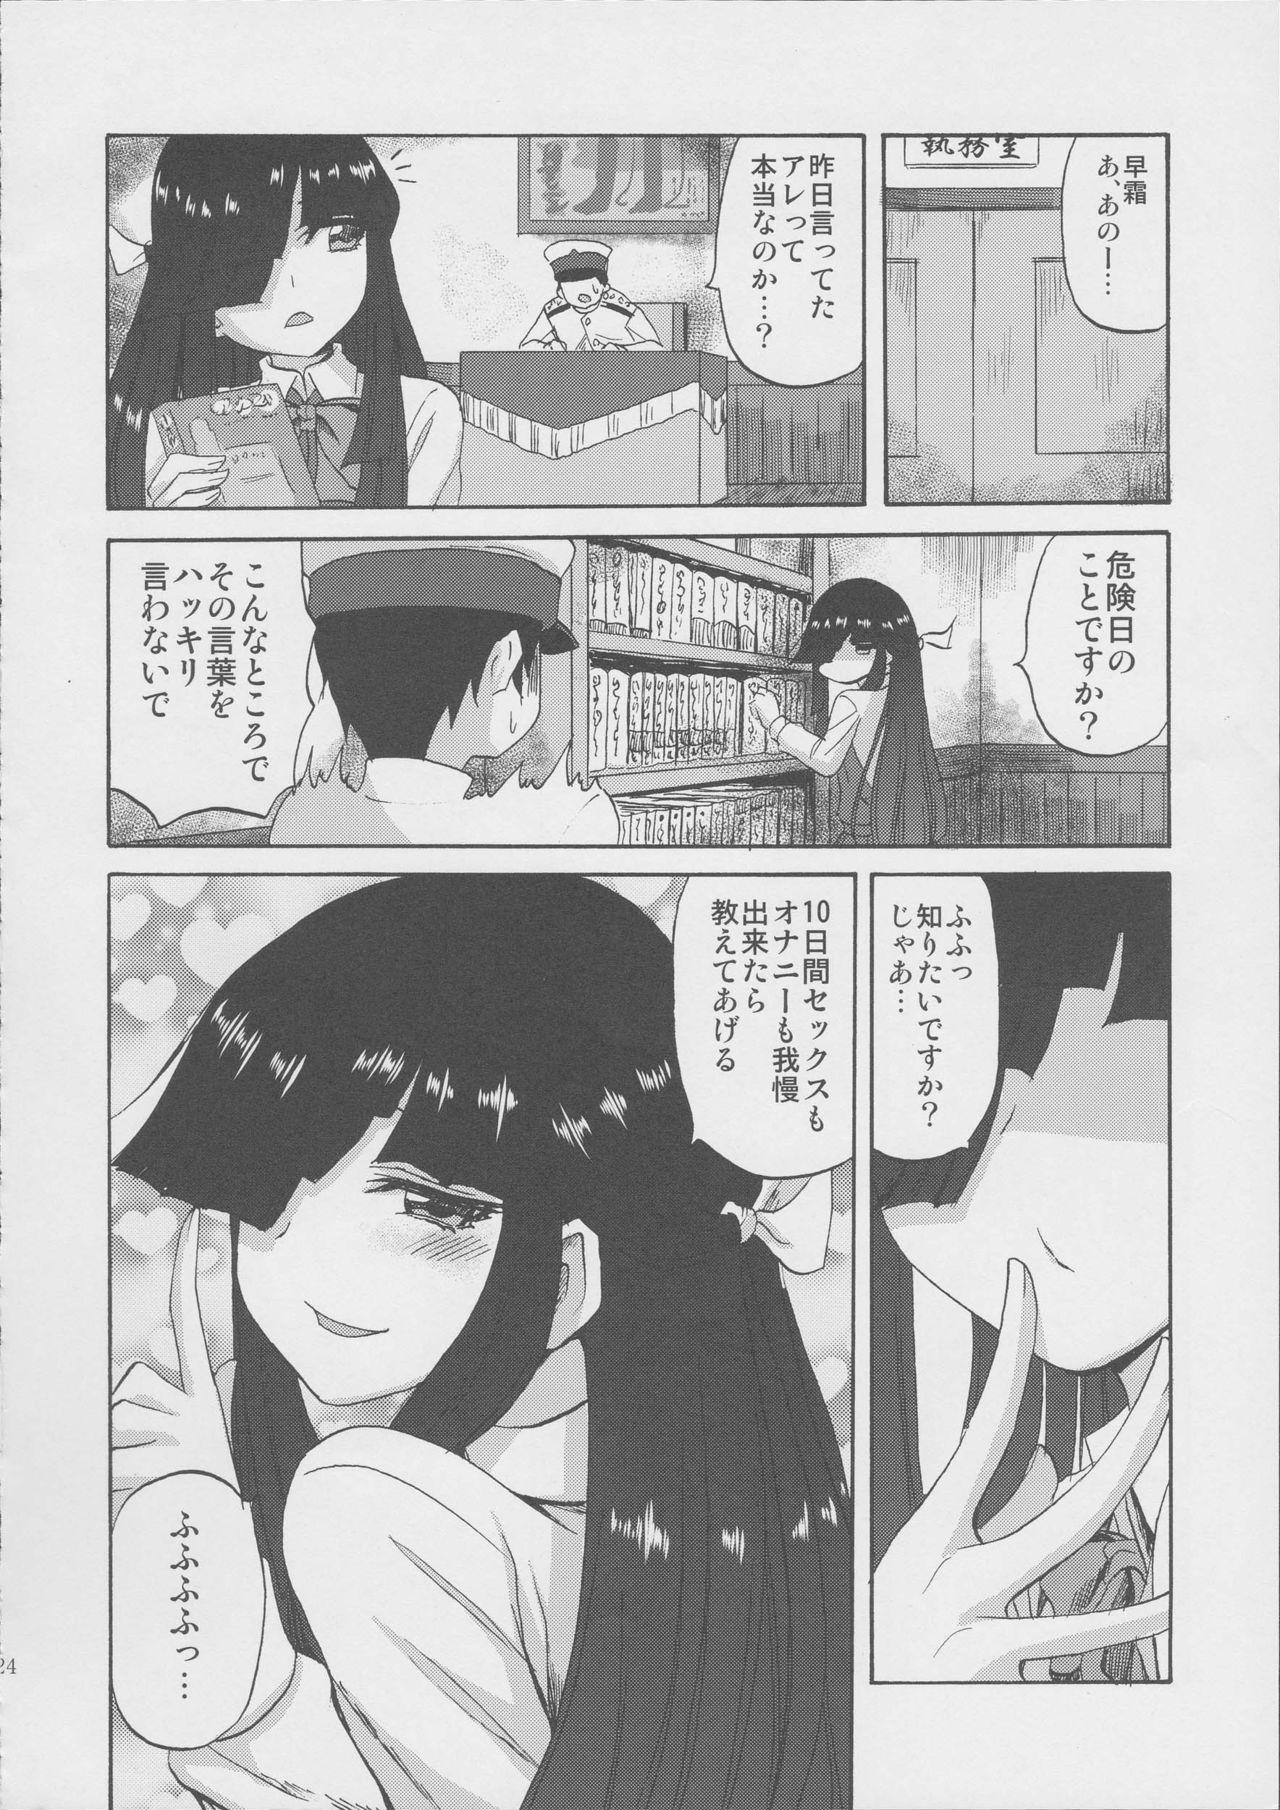  Hayashimo-chan no shaseikanri nisshi - Kantai collection Amigo - Page 24